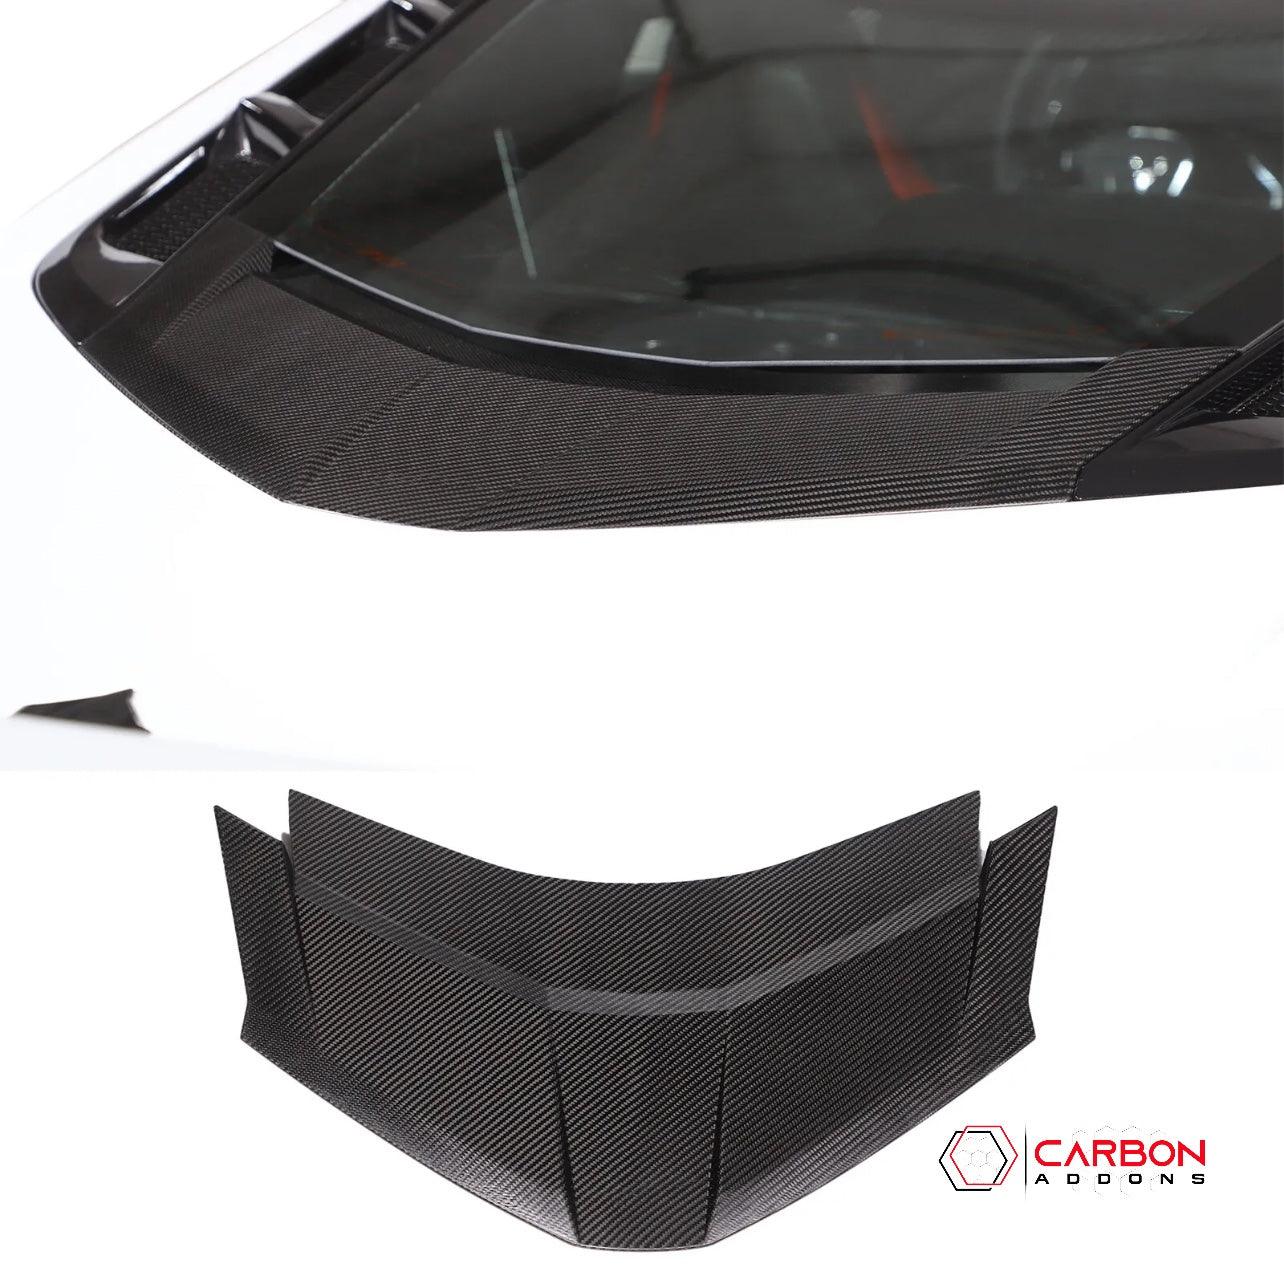 C8 Corvette Exterior Rear Lower Window Carbon Fiber Replacement Trim - carbonaddons Carbon Fiber Parts, Accessories, Upgrades, Mods